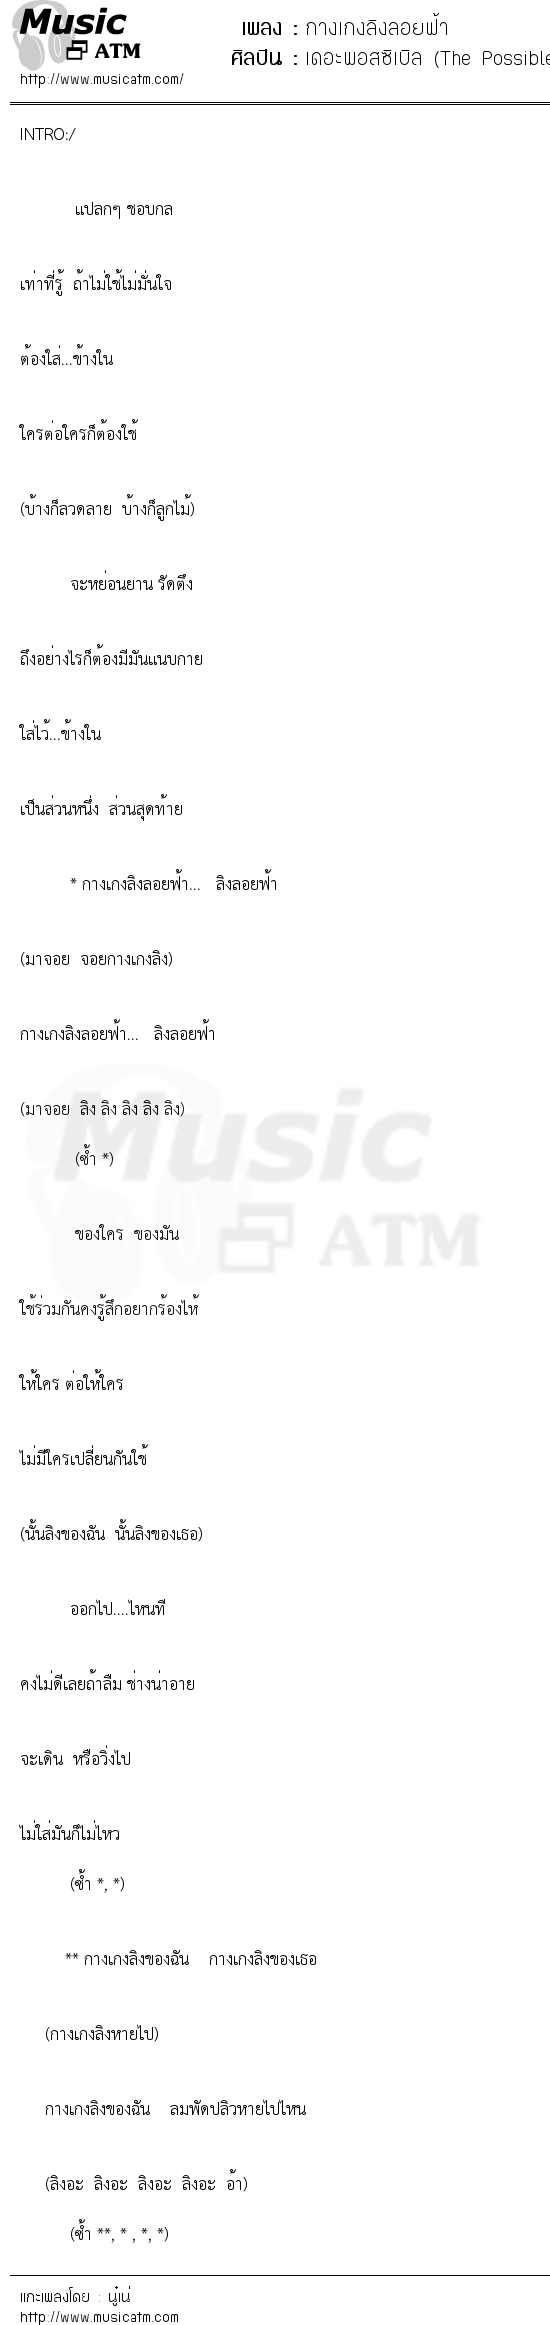 เนื้อเพลง กางเกงลิงลอยฟ้า - เดอะพอสซิเบิล (The Possible) | เพลงไทย